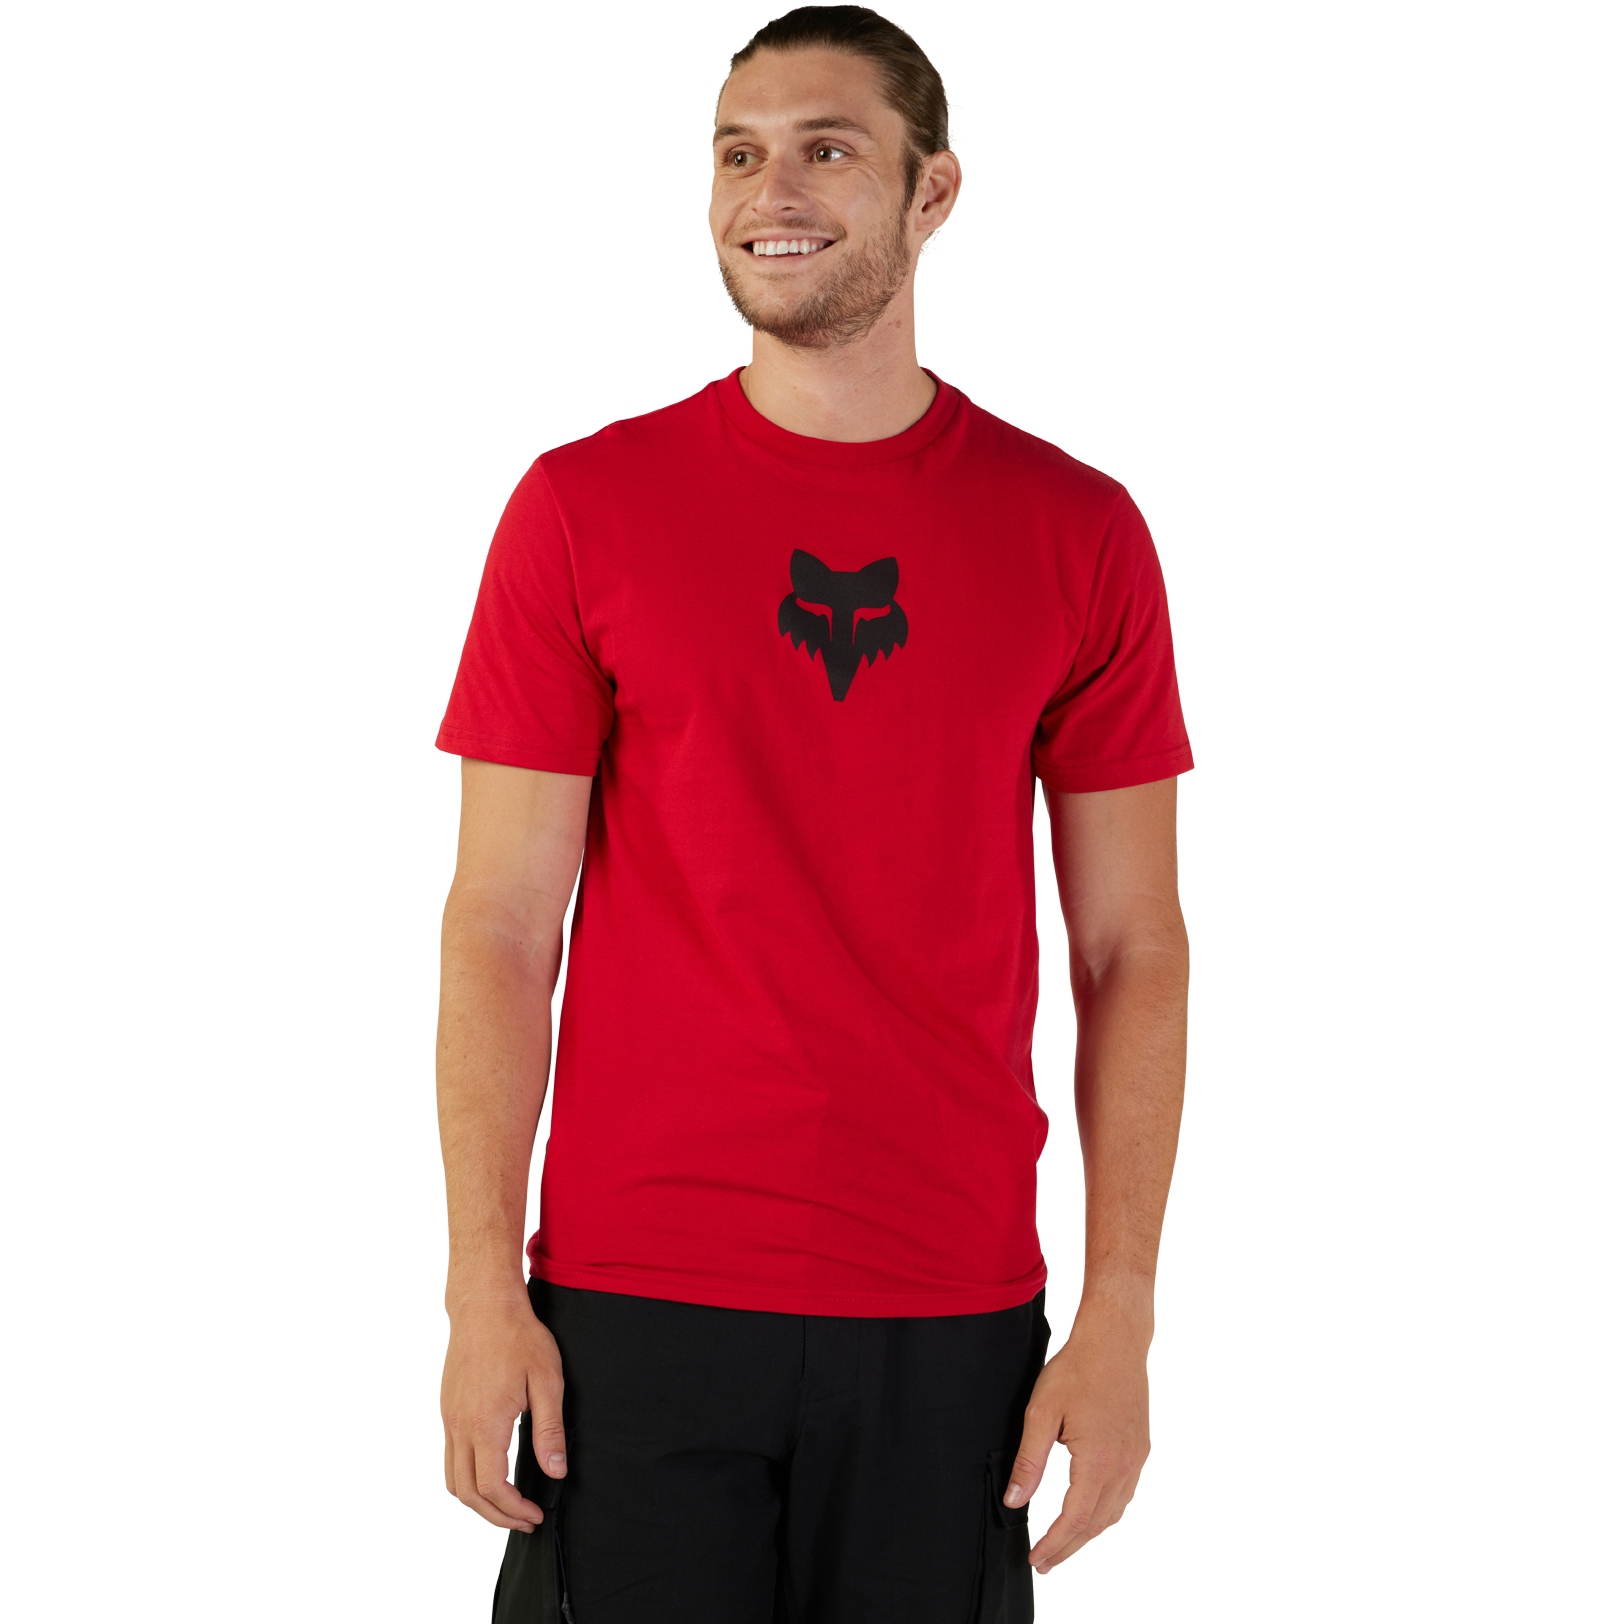 Produktbild von FOX Head Premium T-Shirt Herren - flame red